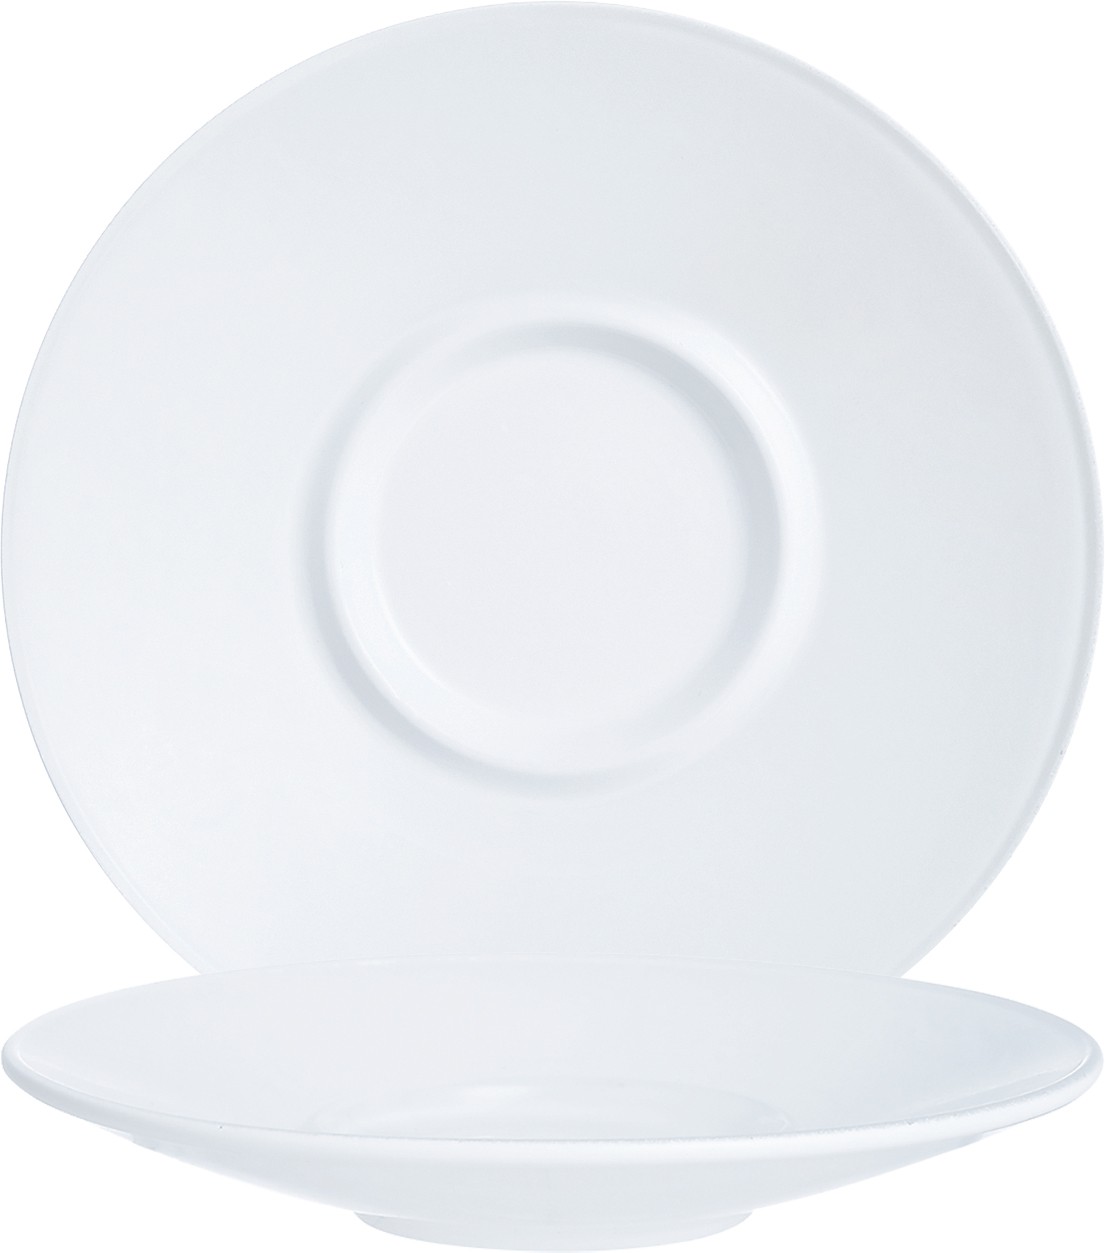 Arcoroc Intensity White Baril Untertasse 14cm, in der farbe Weiß, aus Opal, Stapelbar, Mikrowellen- und Spülmaschinen geeignet